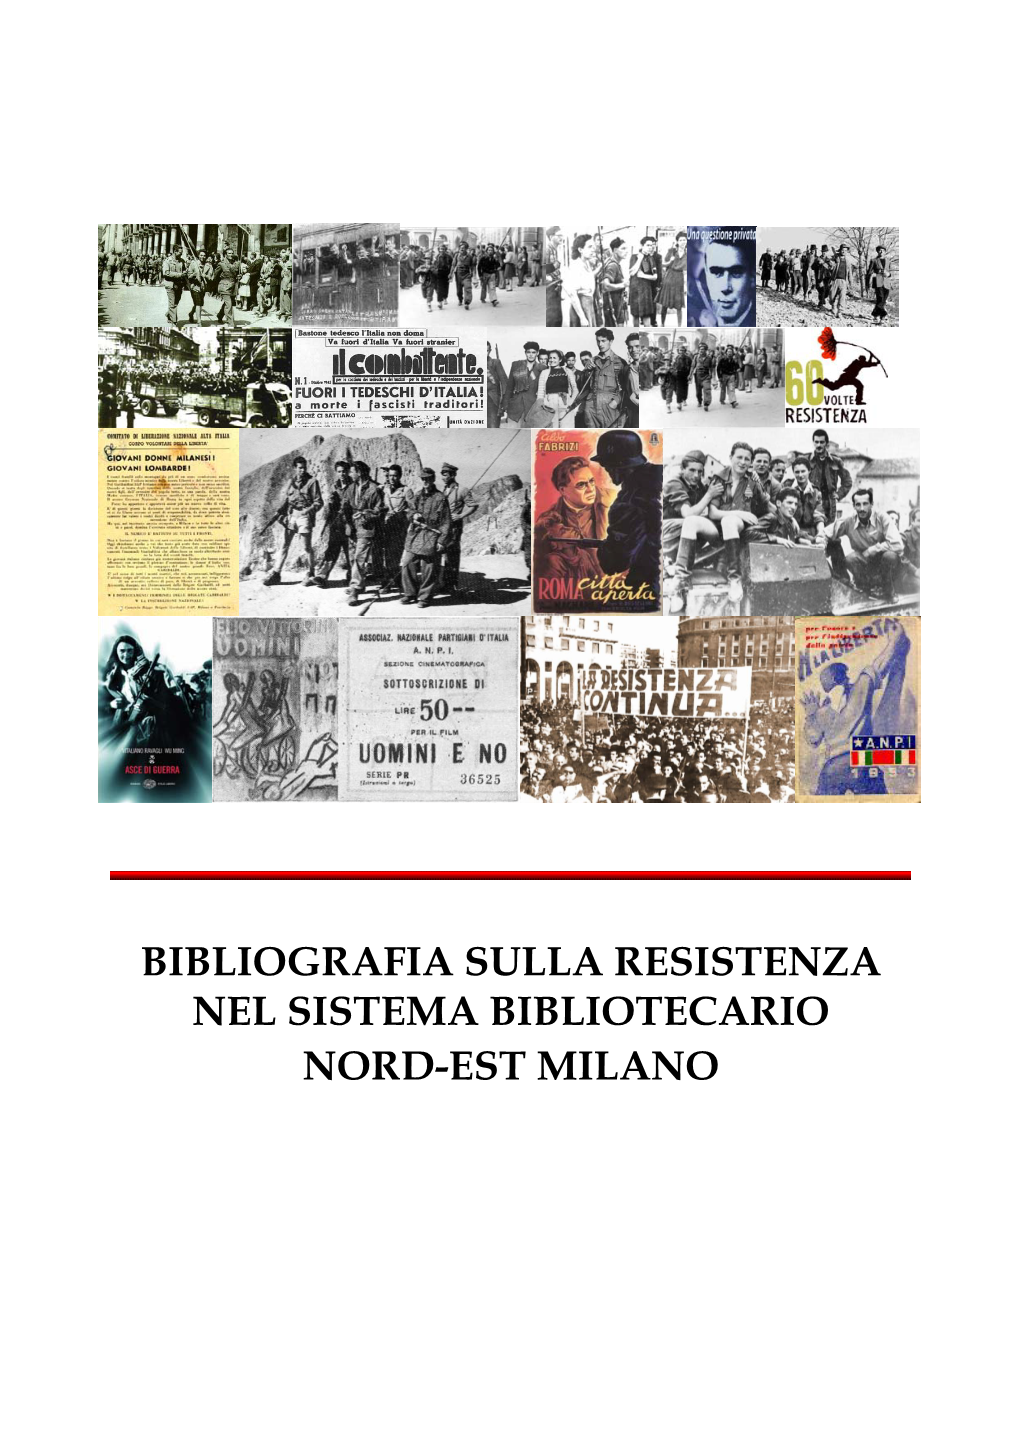 Bibliografia Sulla Resistenza Nel Sistema Bibliotecario Nord-Est Milano